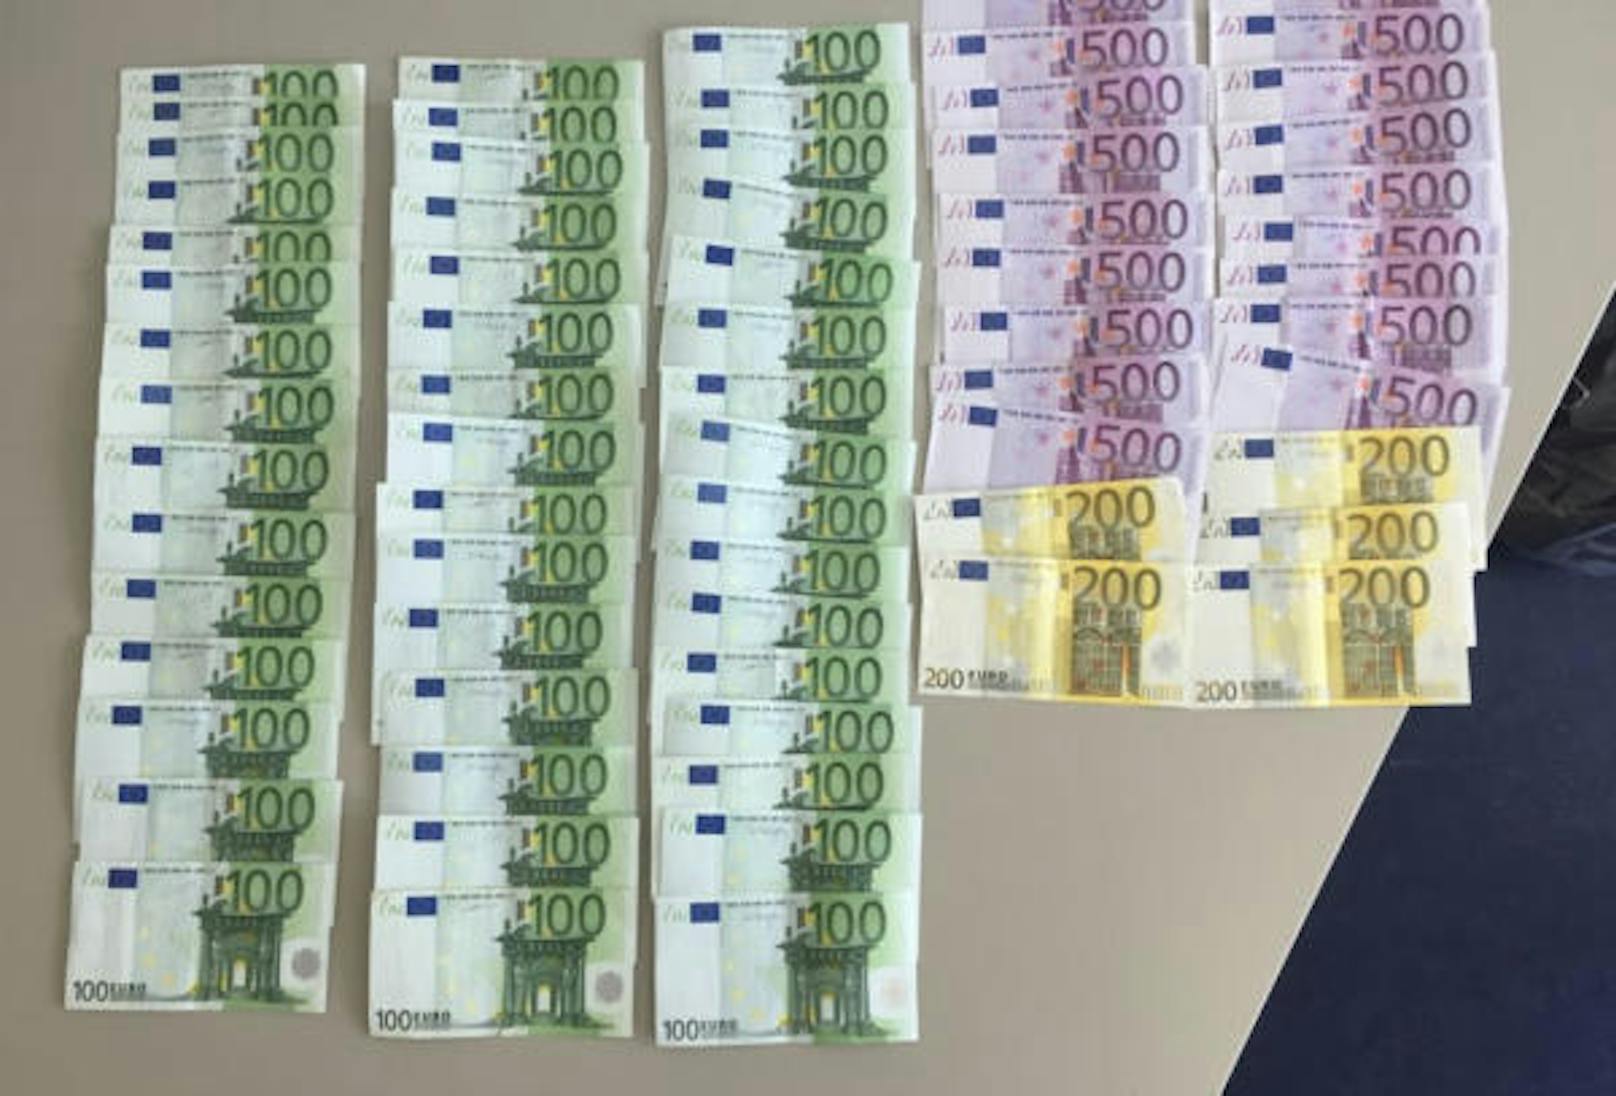 Der Passagier führte zudem Bargeld in Höhe von 14.600 Euro mit sich. Ware und Bargeld wurden beschlagnahmt.